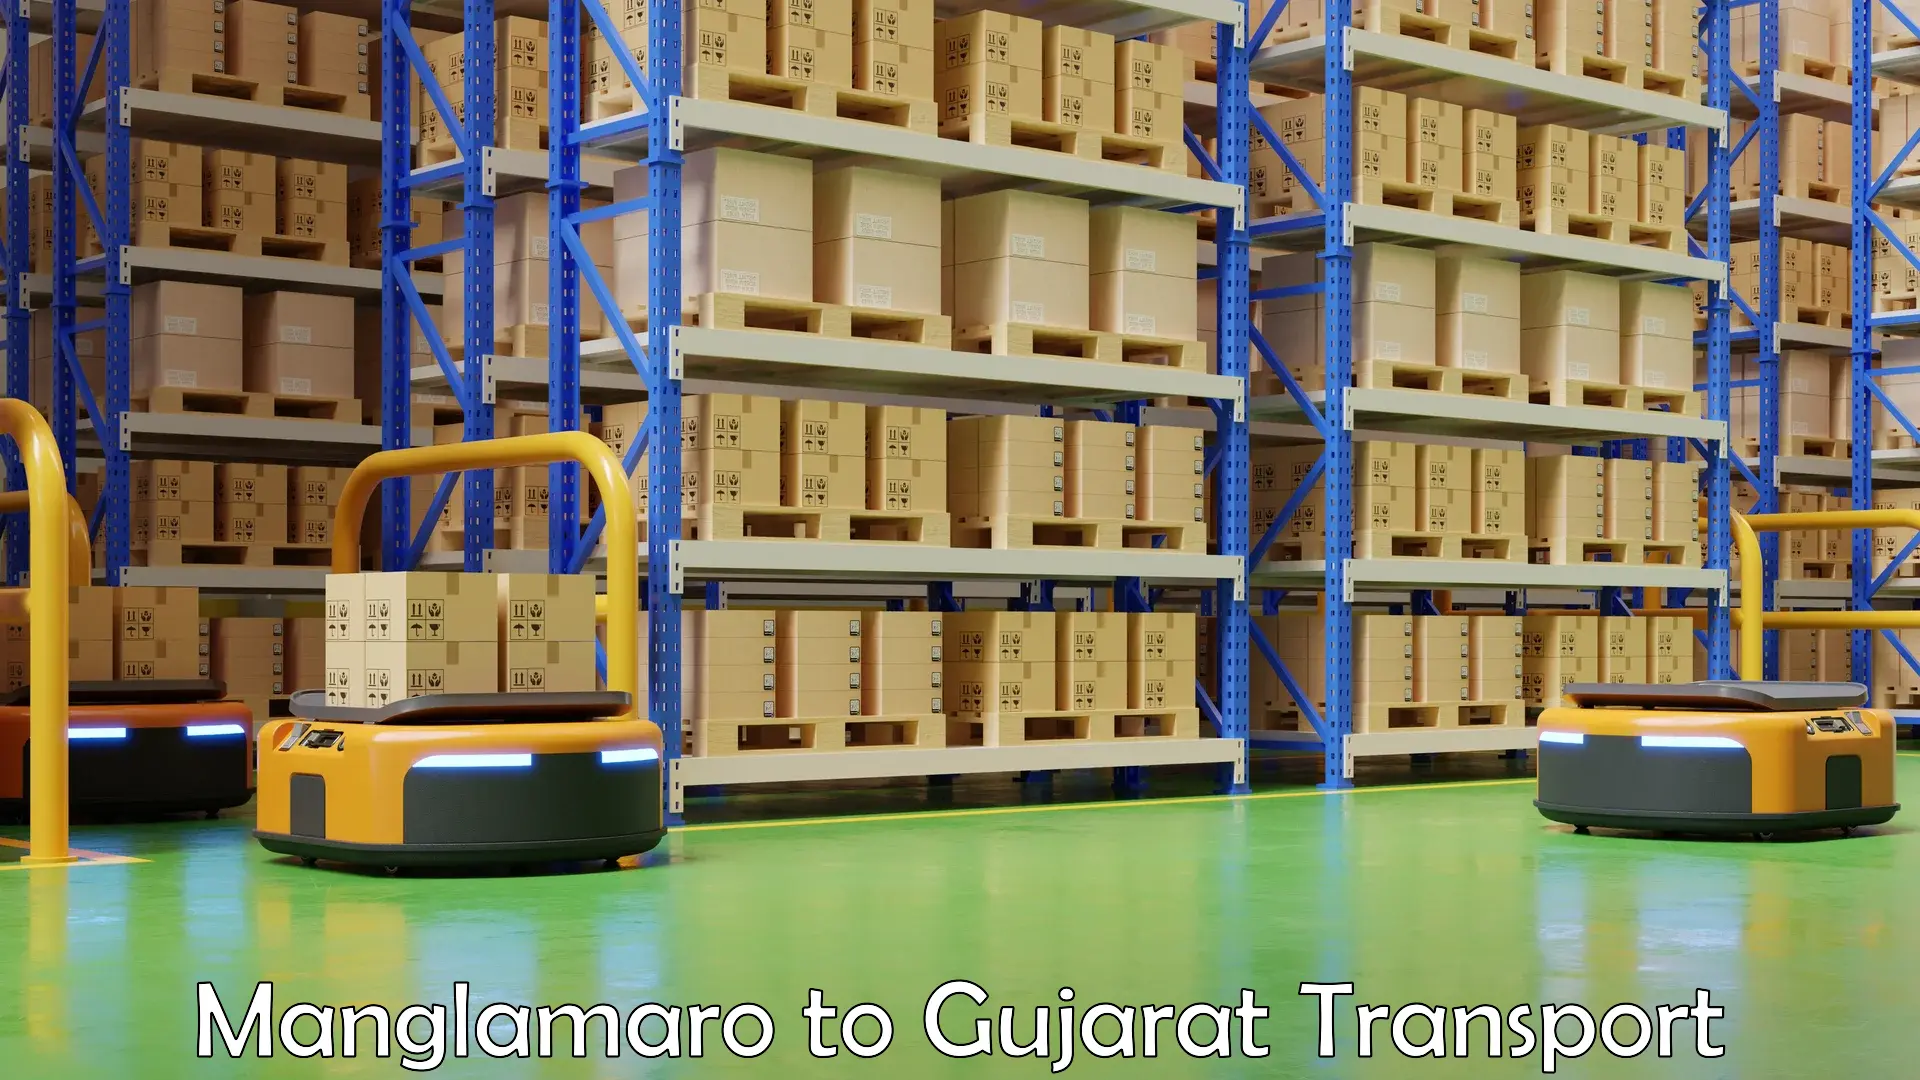 Daily transport service Manglamaro to Gujarat